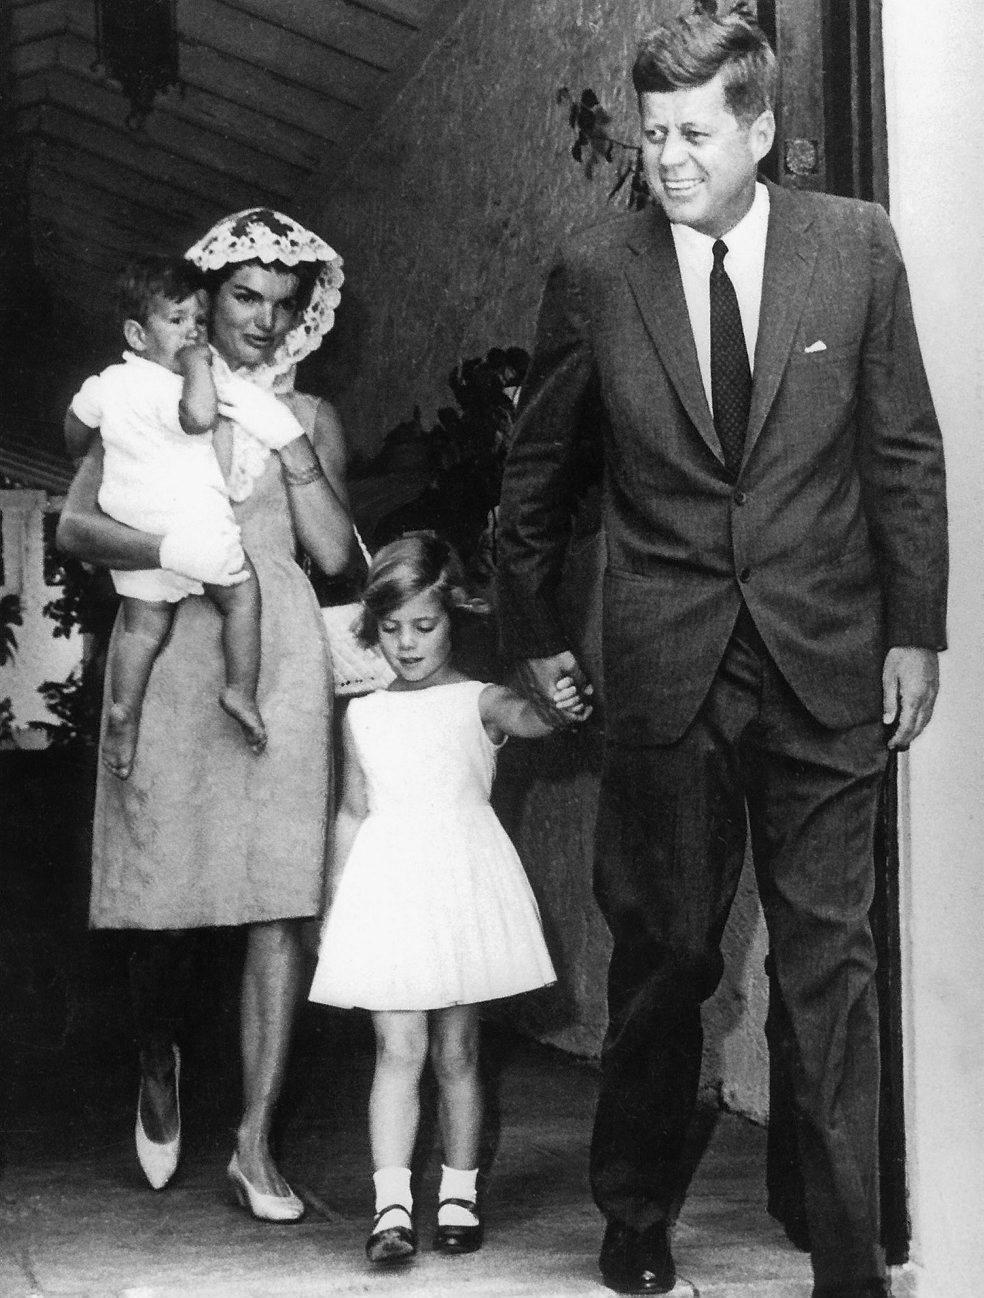 Caroline med pappa John, mamma Jaqueline och lillebror John John på en bild från 1963.